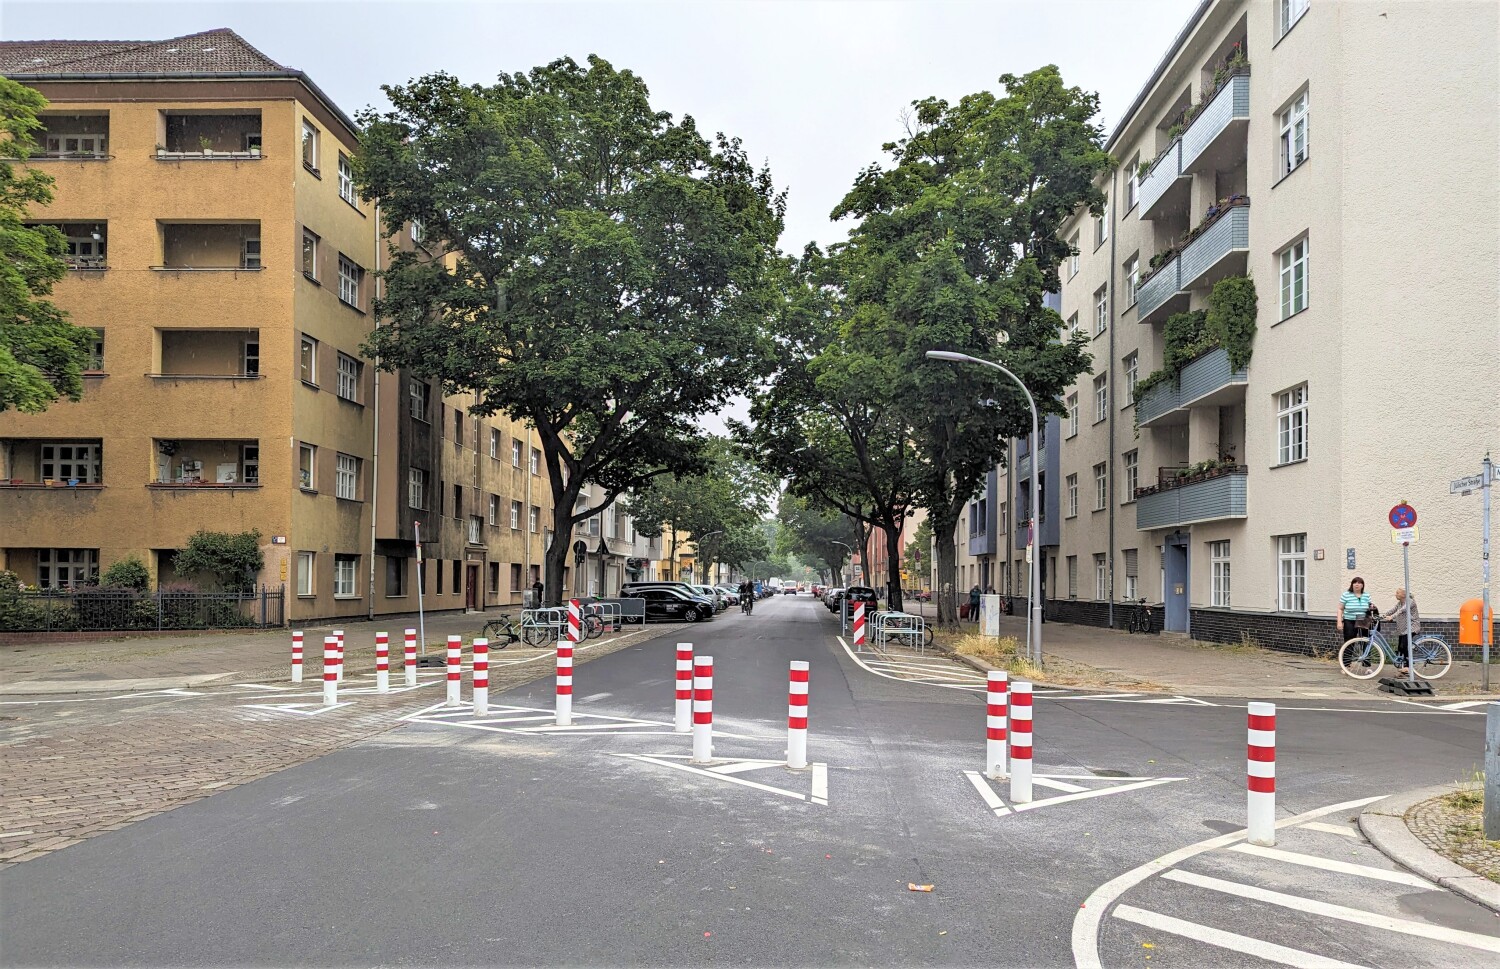 Kiezblock Bellermannkiez: Modalfilter in der Jülicher Straße